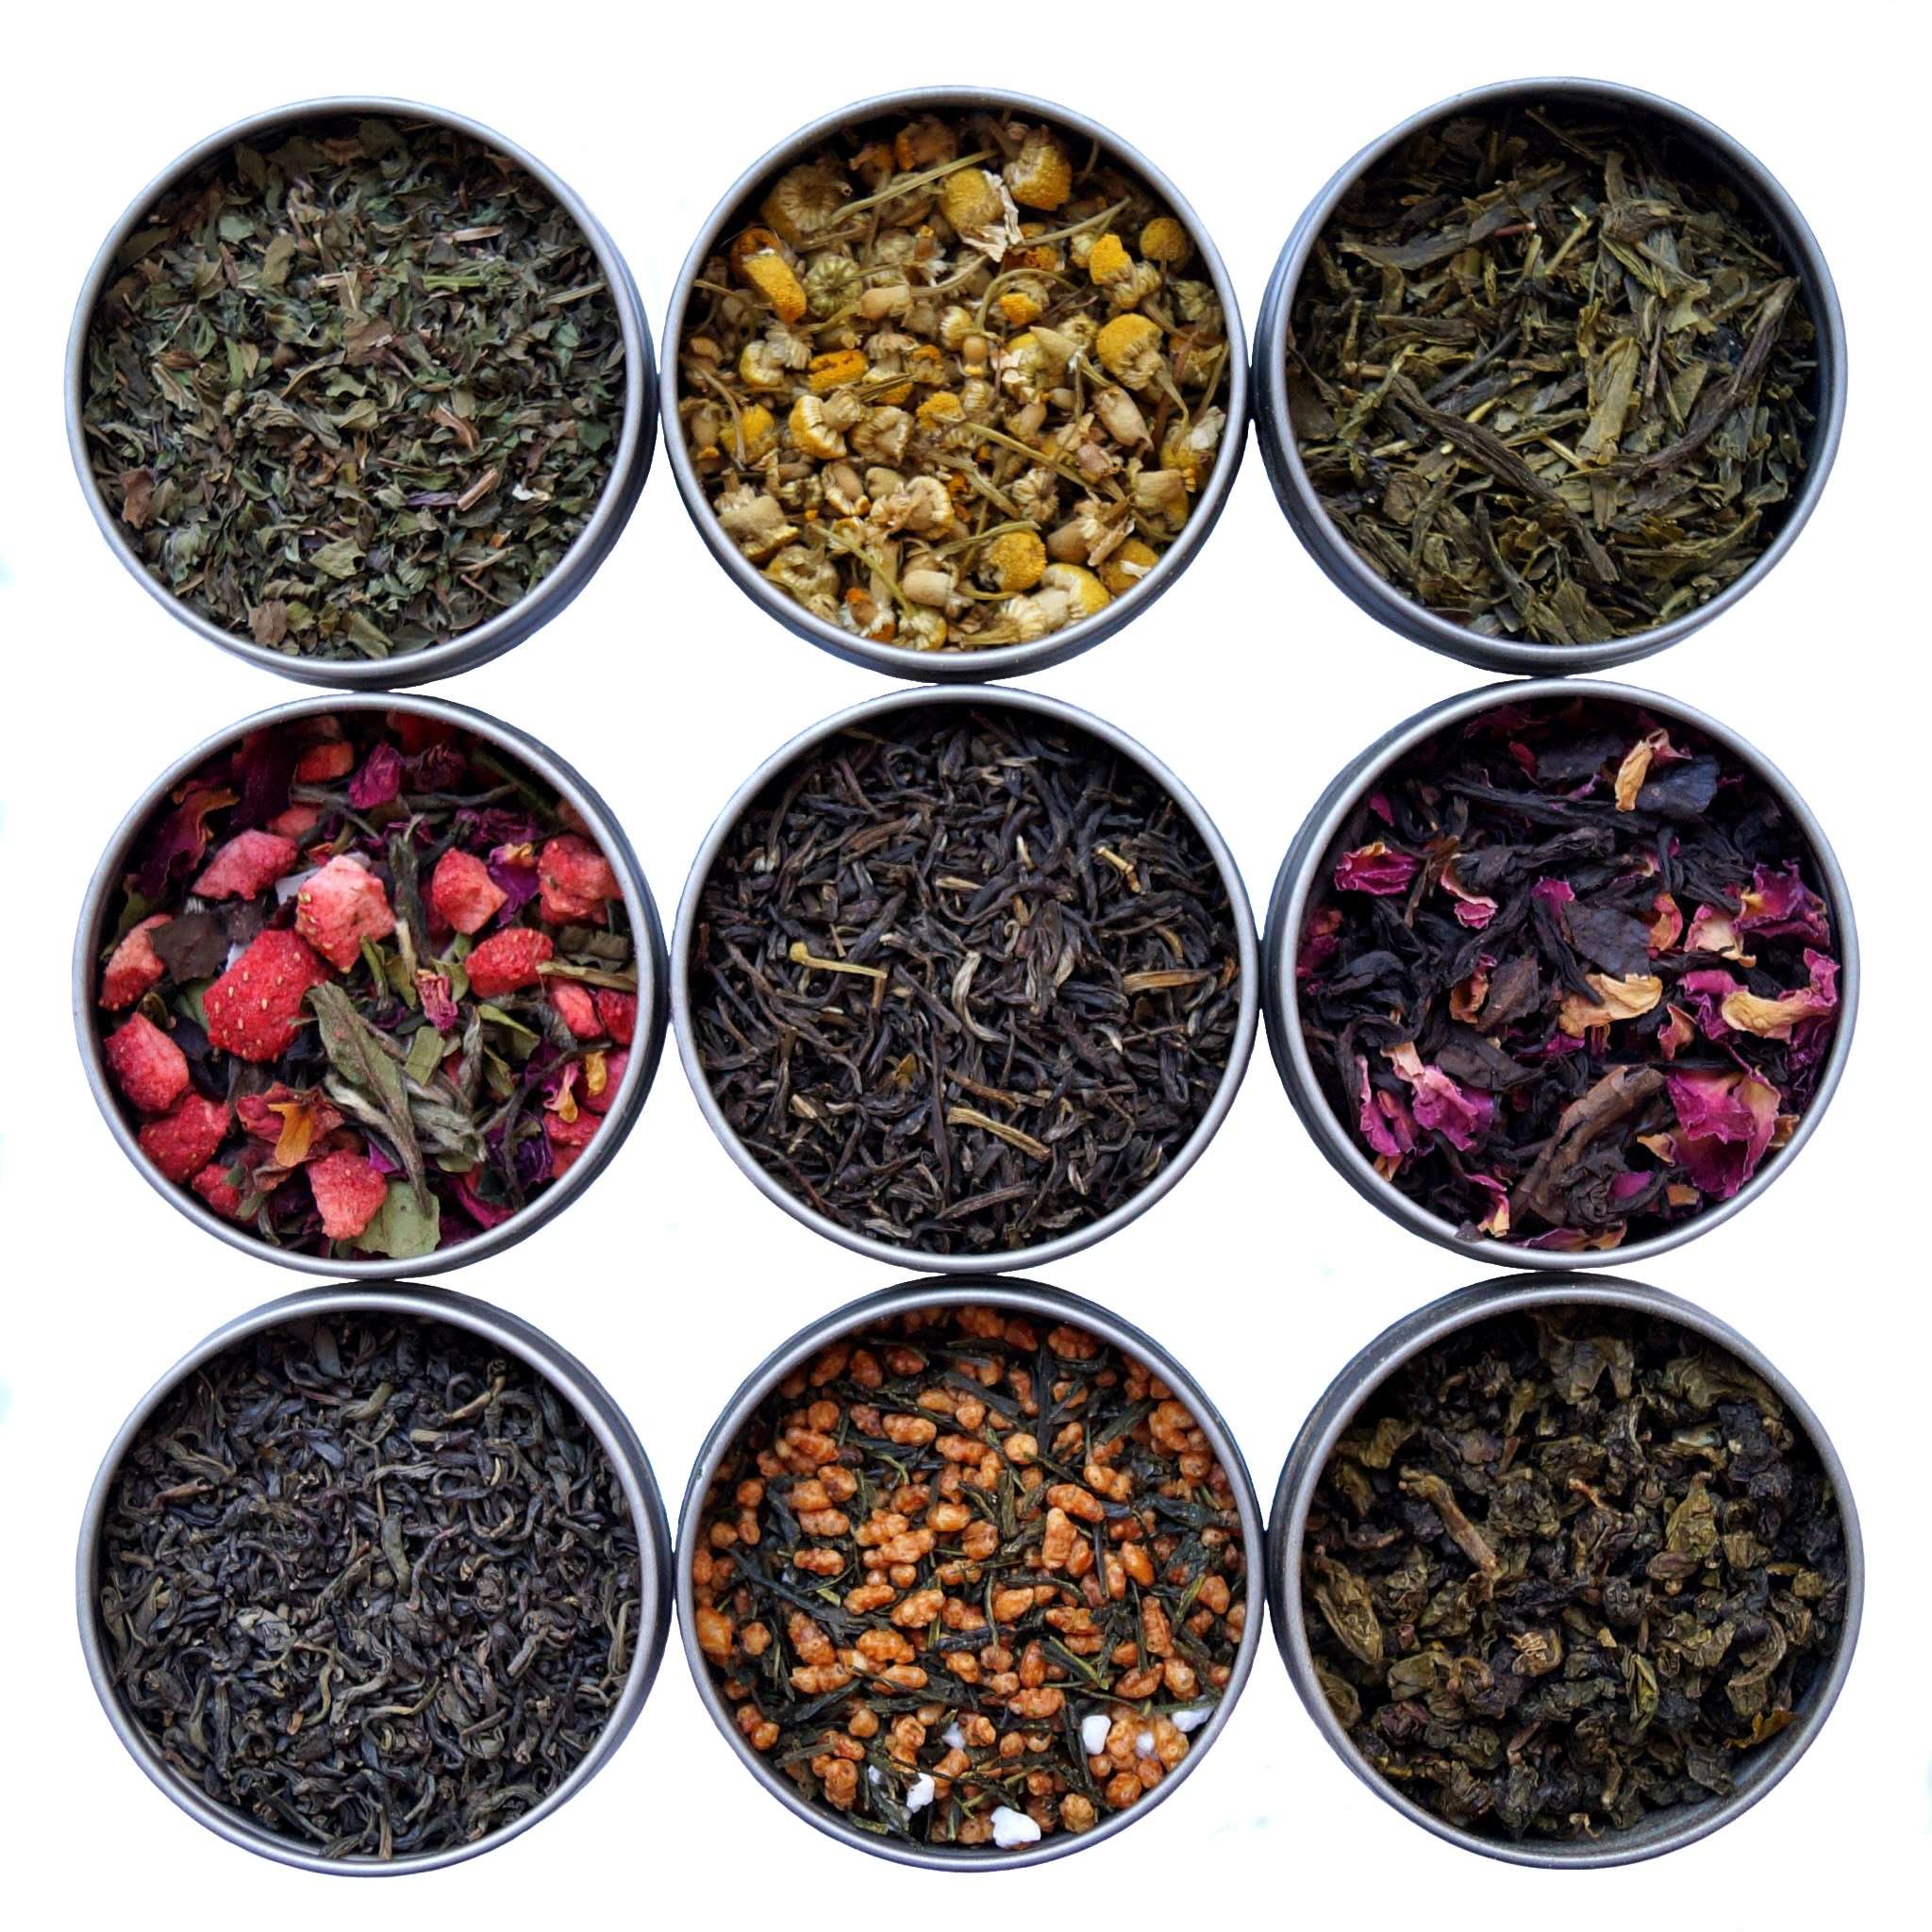 Heavenly Tea Leaves 9 Flavor Loose Leaf Tea Variety Pack, 9 Count ...